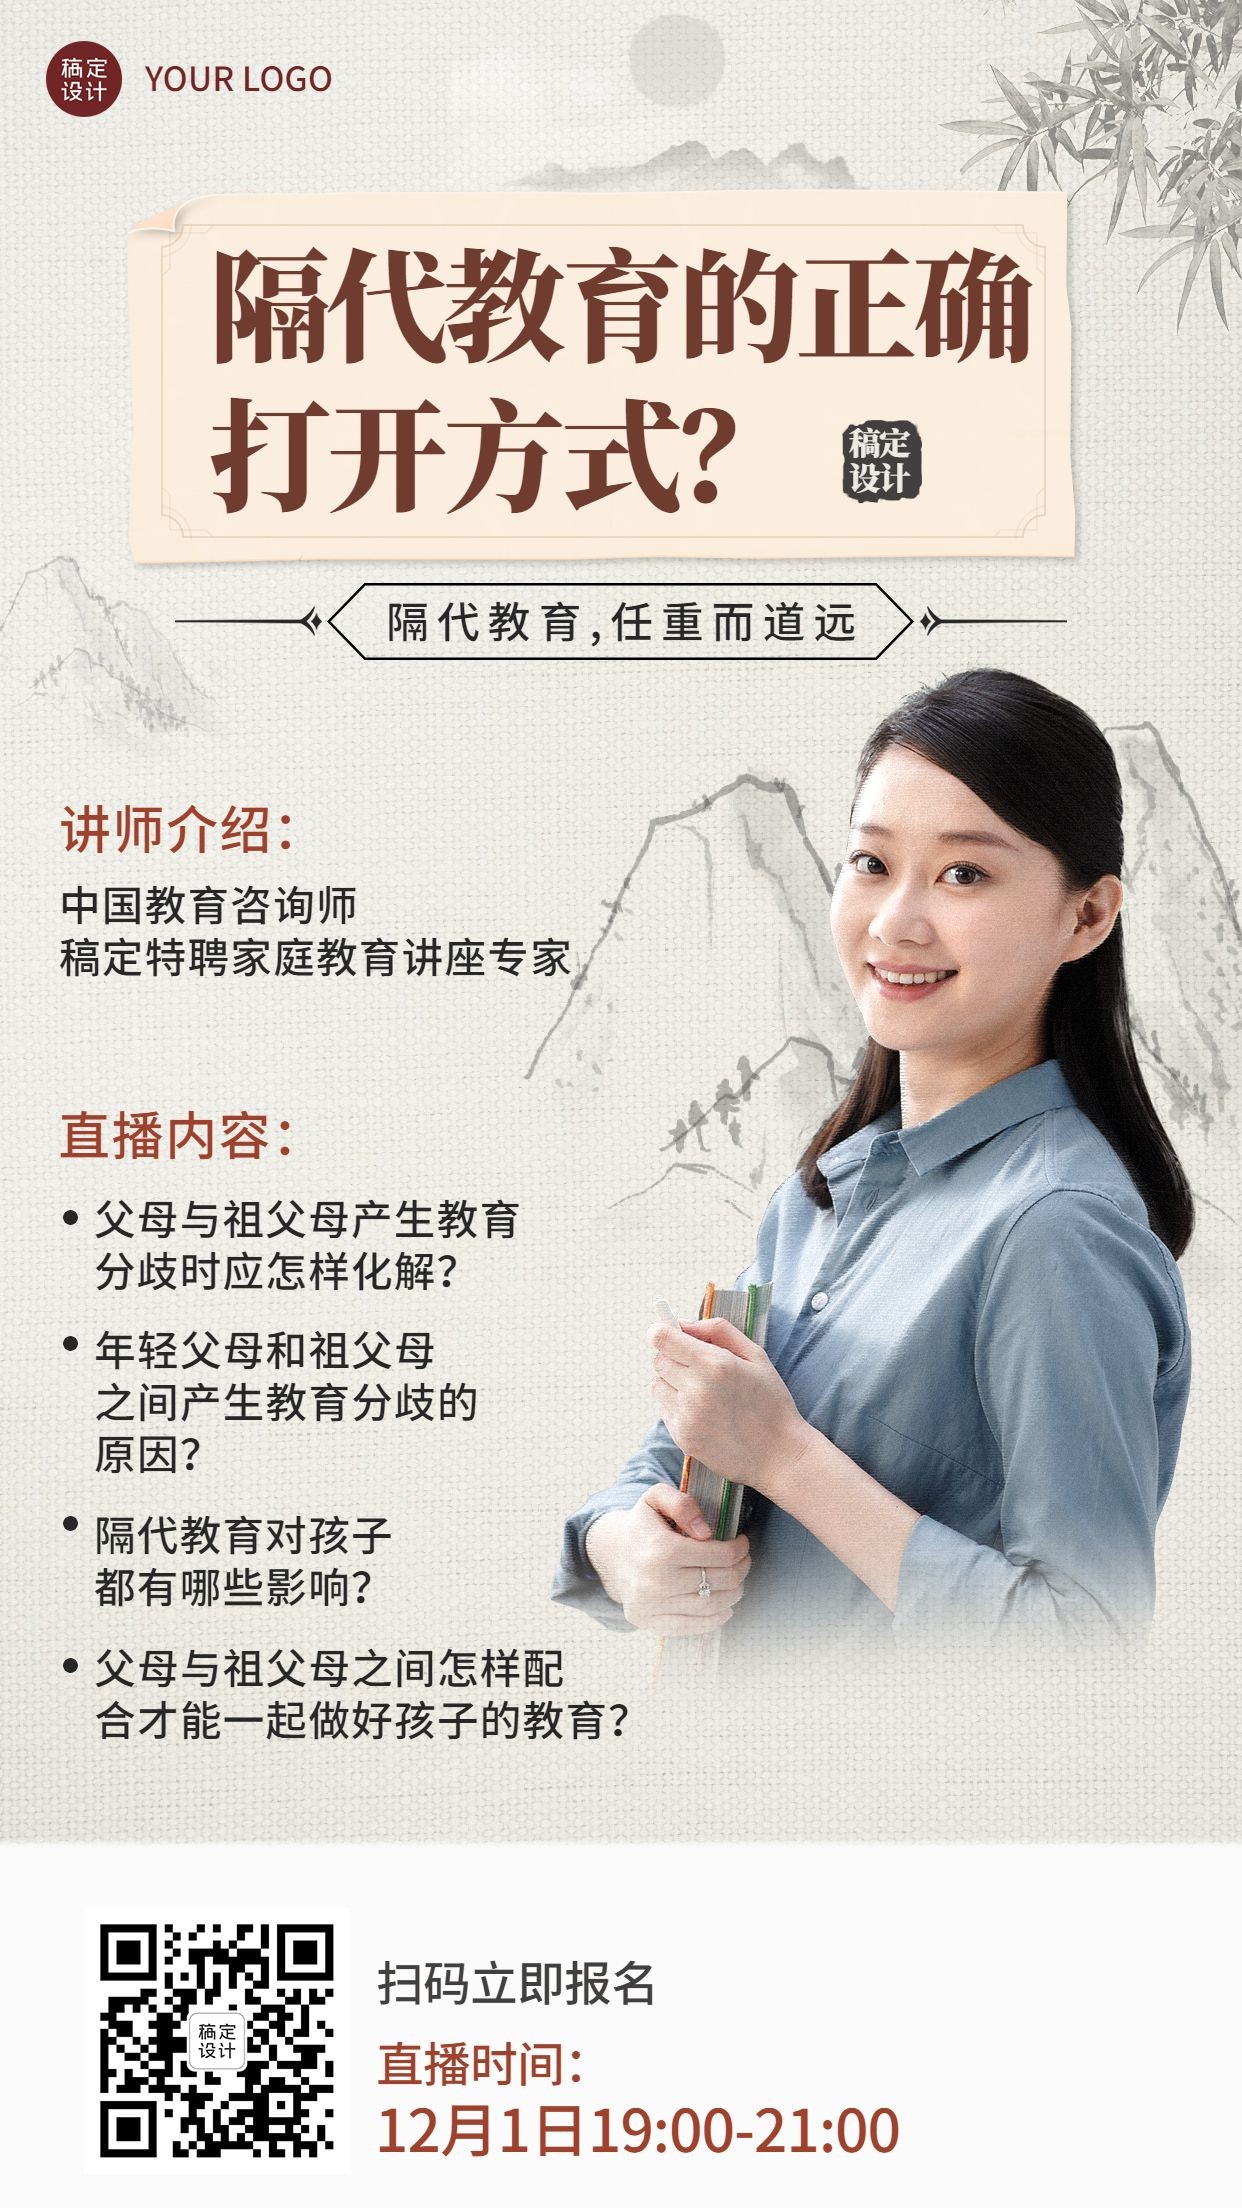 中国风讲师隔代教育课程直播竖版海报预览效果